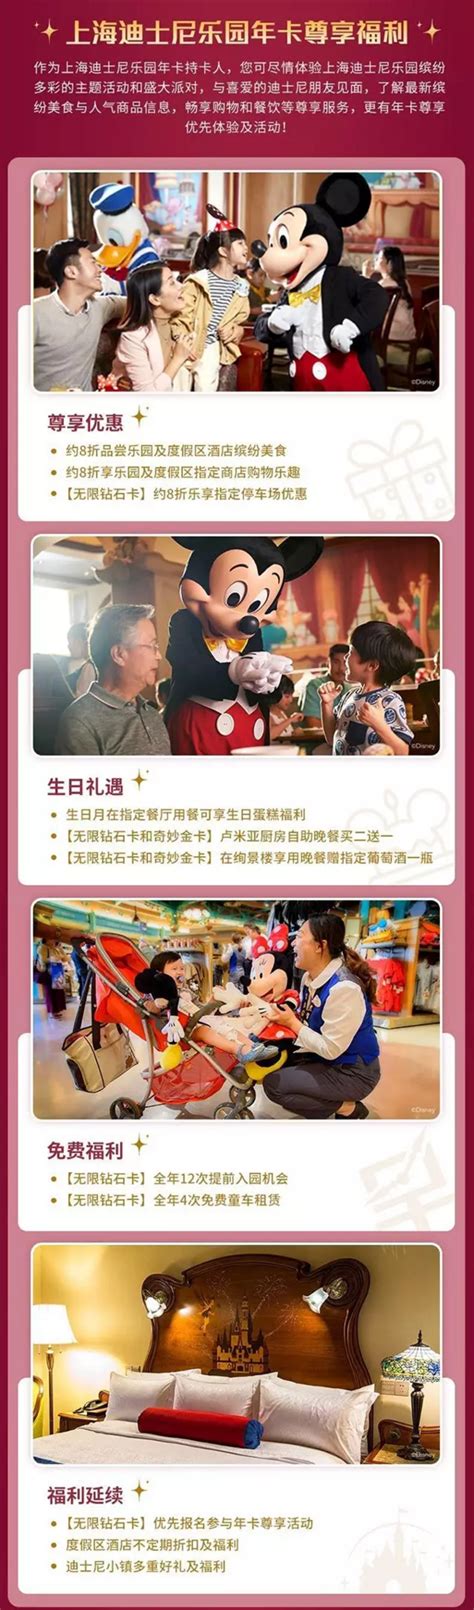 上海迪士尼乐园门票预订_地址_价格查询-【要出发， 有品质的旅行】